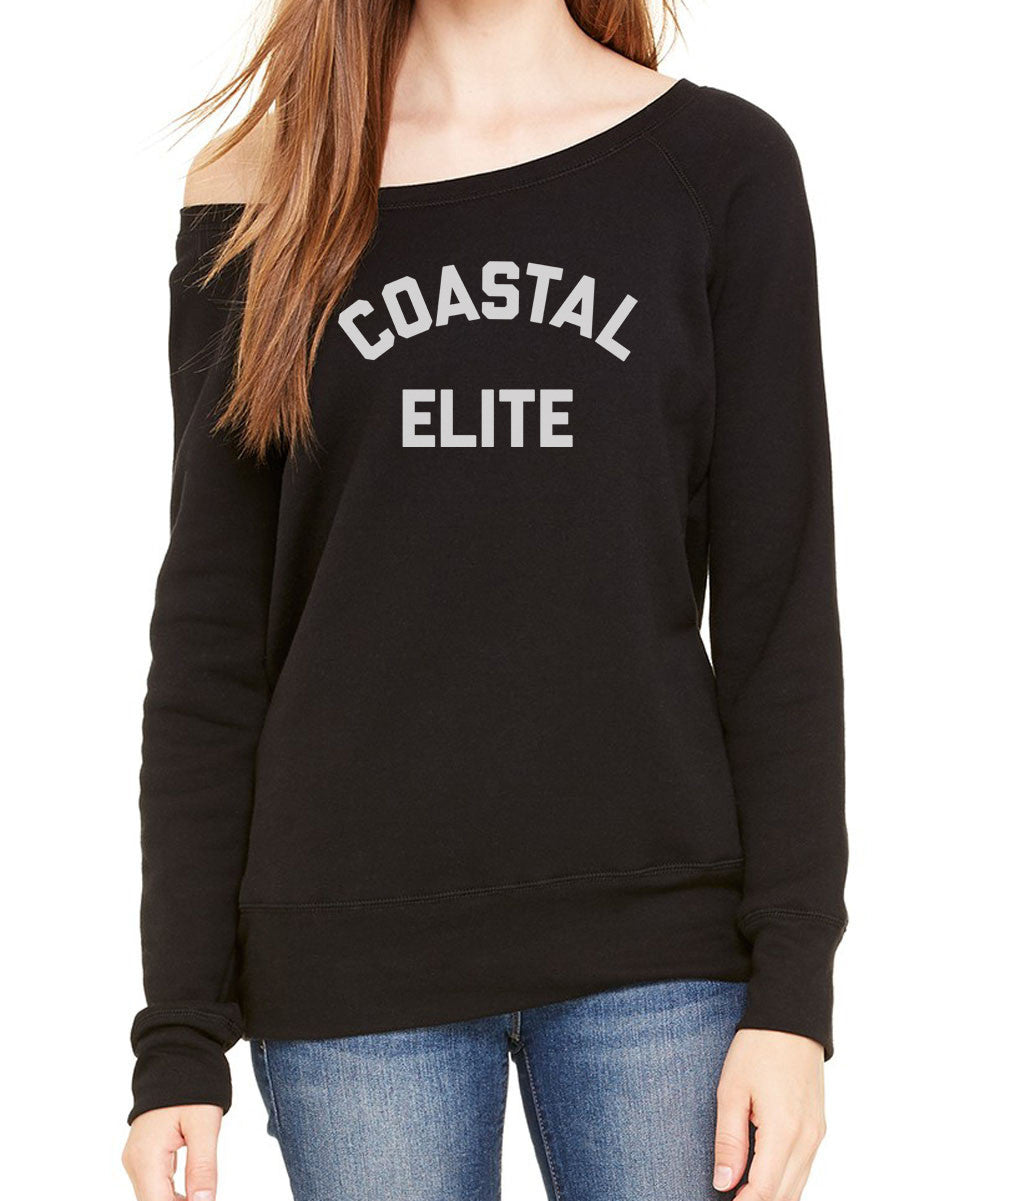 Women's Coastal Elite Scoop Neck Fleece